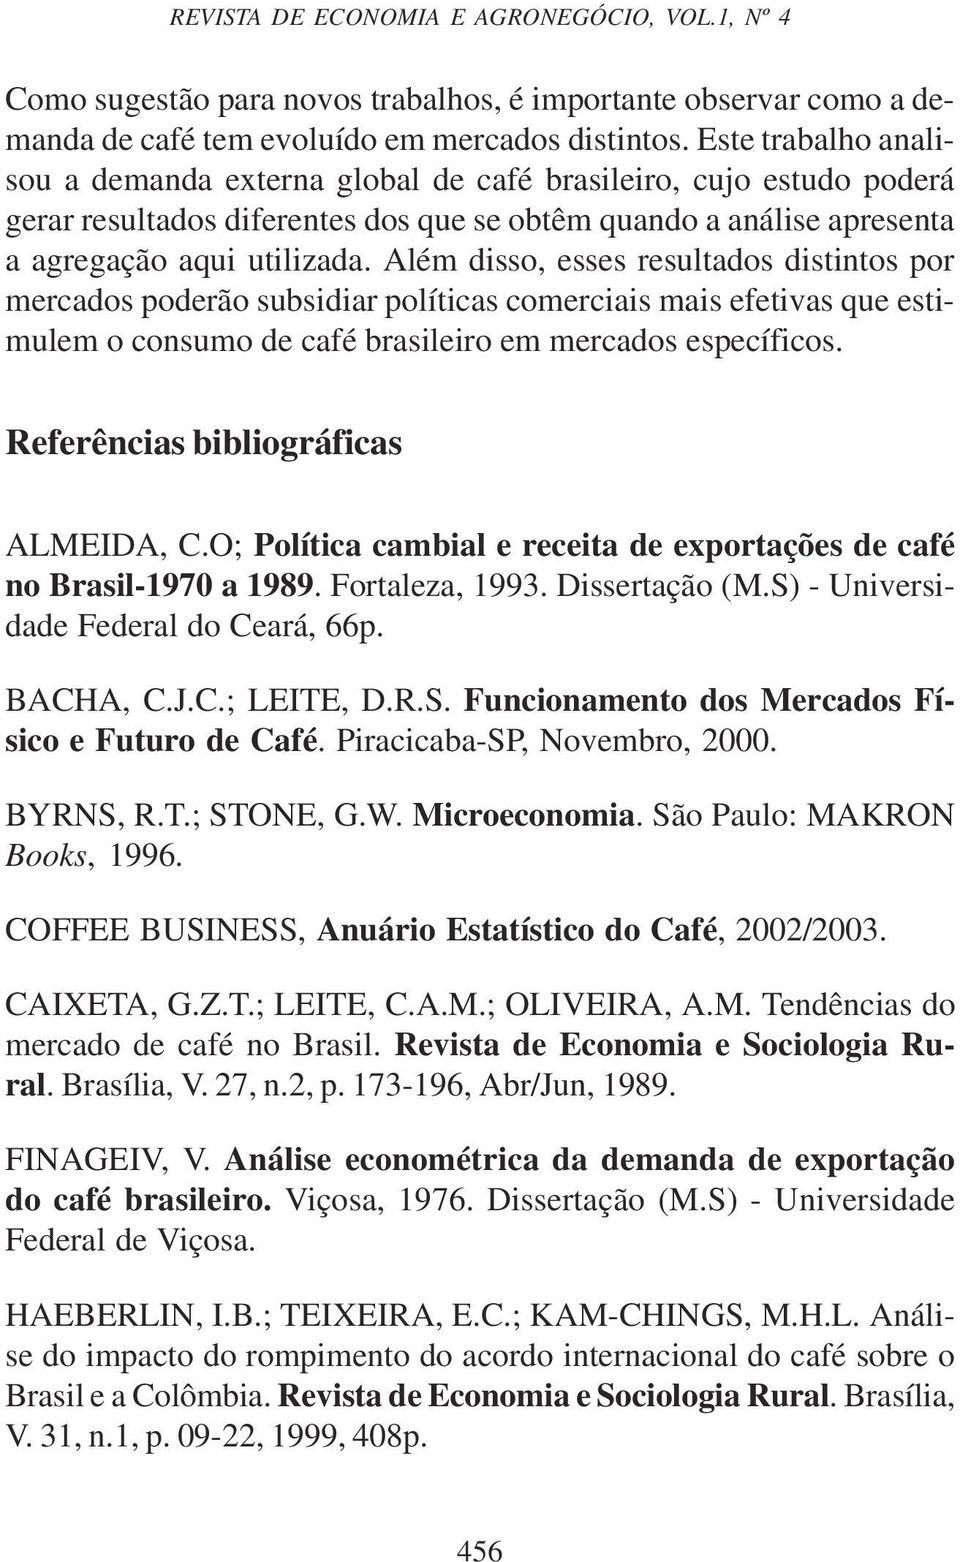 Além disso, esses resultados distintos por mercados poderão subsidiar políticas comerciais mais efetivas que estimulem o consumo de café brasileiro em mercados específicos.